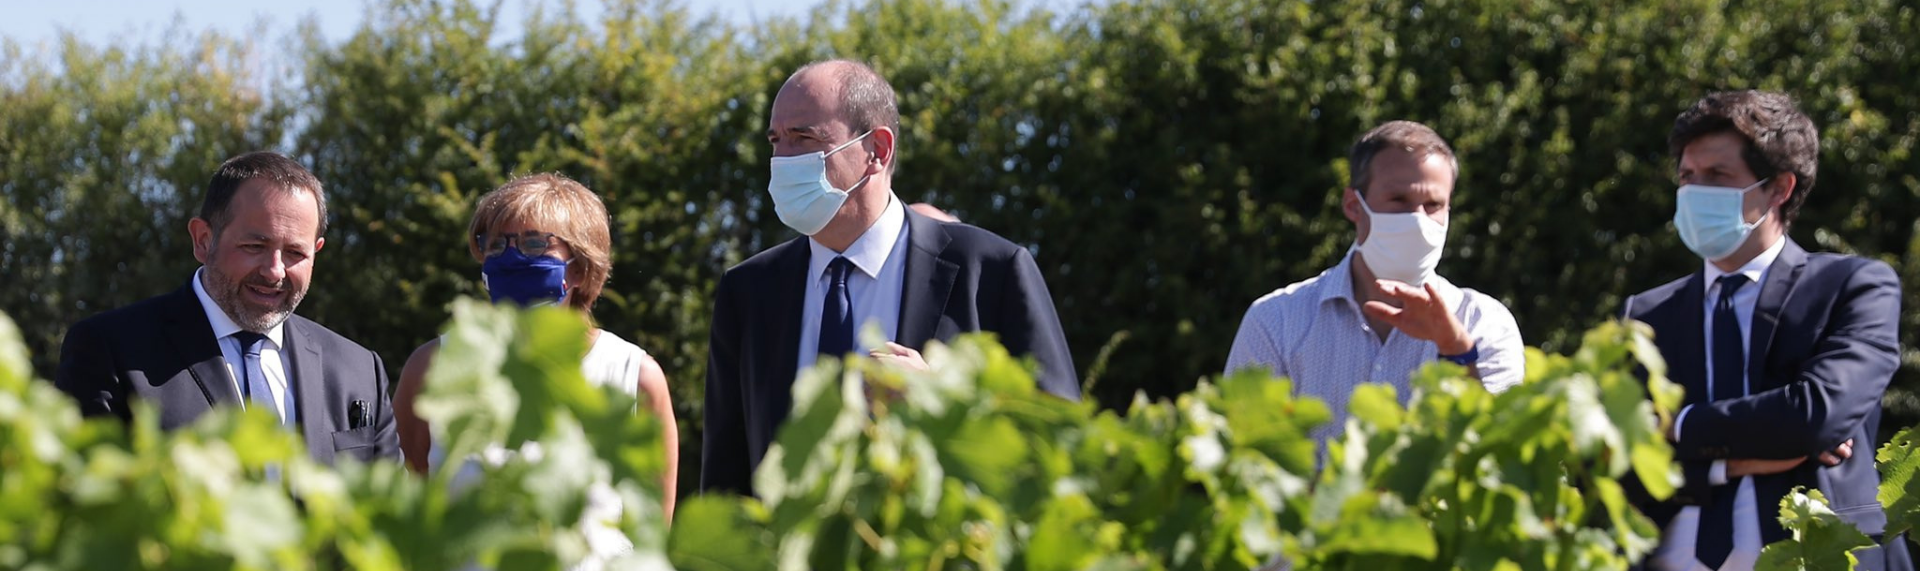 Le Premier Ministre accompagné du ministre de l'Agriculture en visite dans le Cher pour soutenir les viticulteurs et agriculteurs